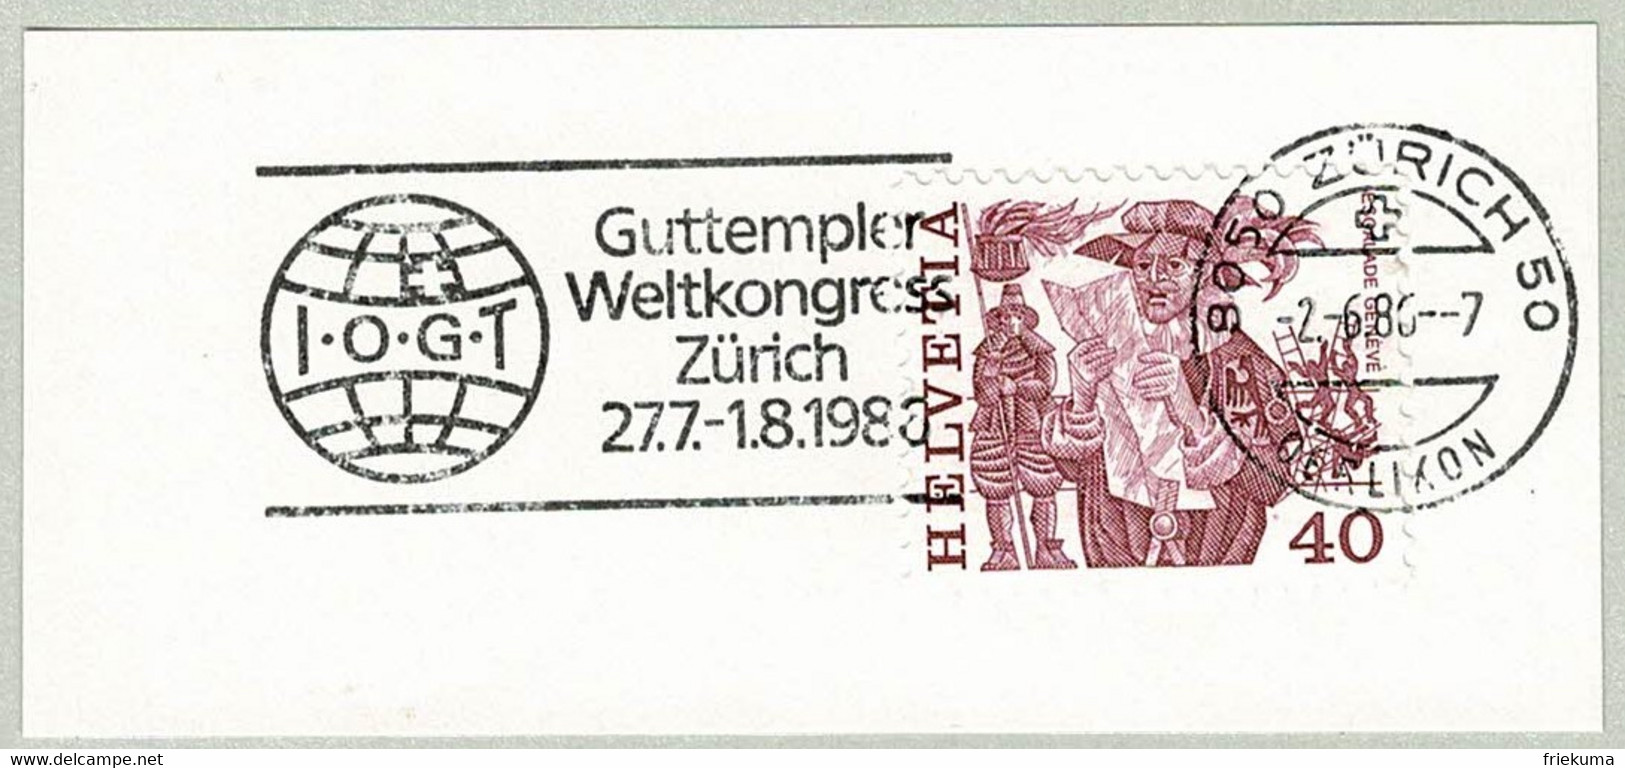 Schweiz / Helvetia 1986, Flaggenstempel Guttempler Weltkongress Zürich, Abstinenz, Alkohol, Drogen, Good Templars - Drogue